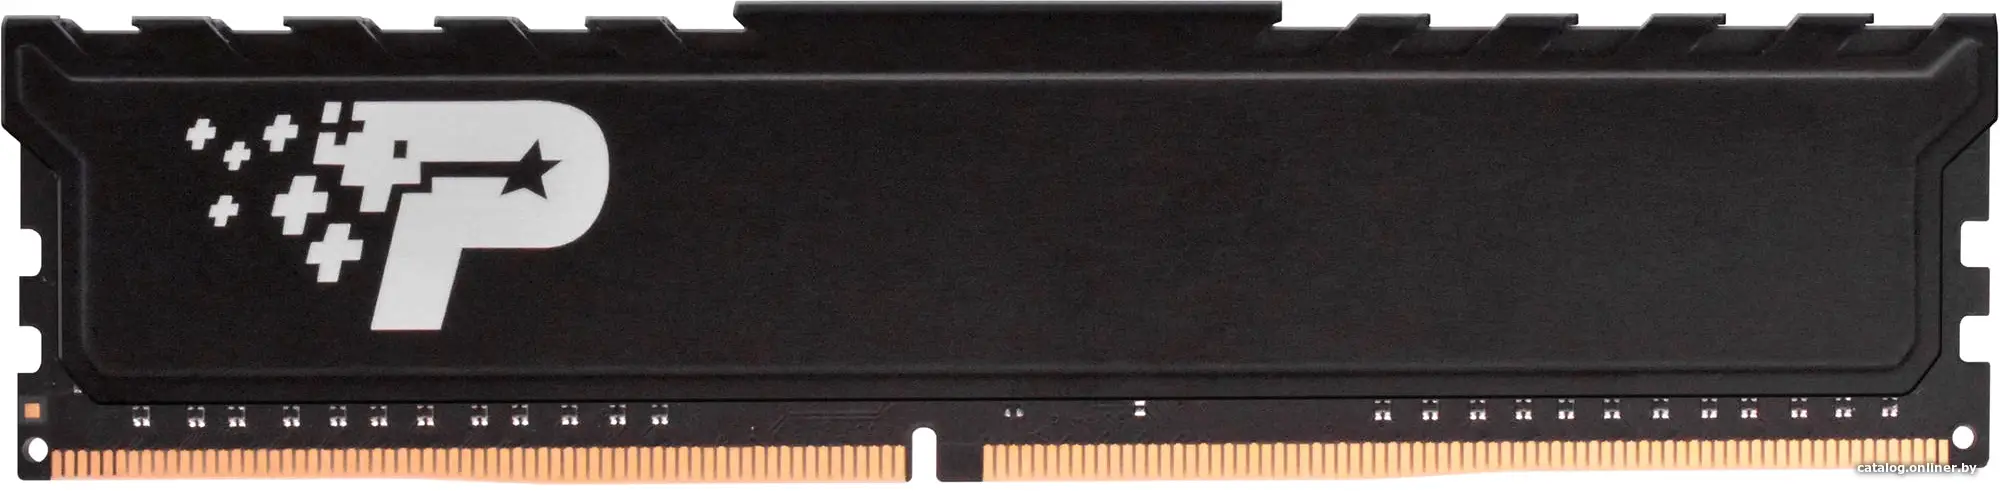 Купить Память DDR4 2x8GB 3200MHz Patriot PSP416G3200KH1 Signature RTL PC4-25600 CL22 DIMM 288-pin 1.2В kit с радиатором Ret, цена, опт и розница